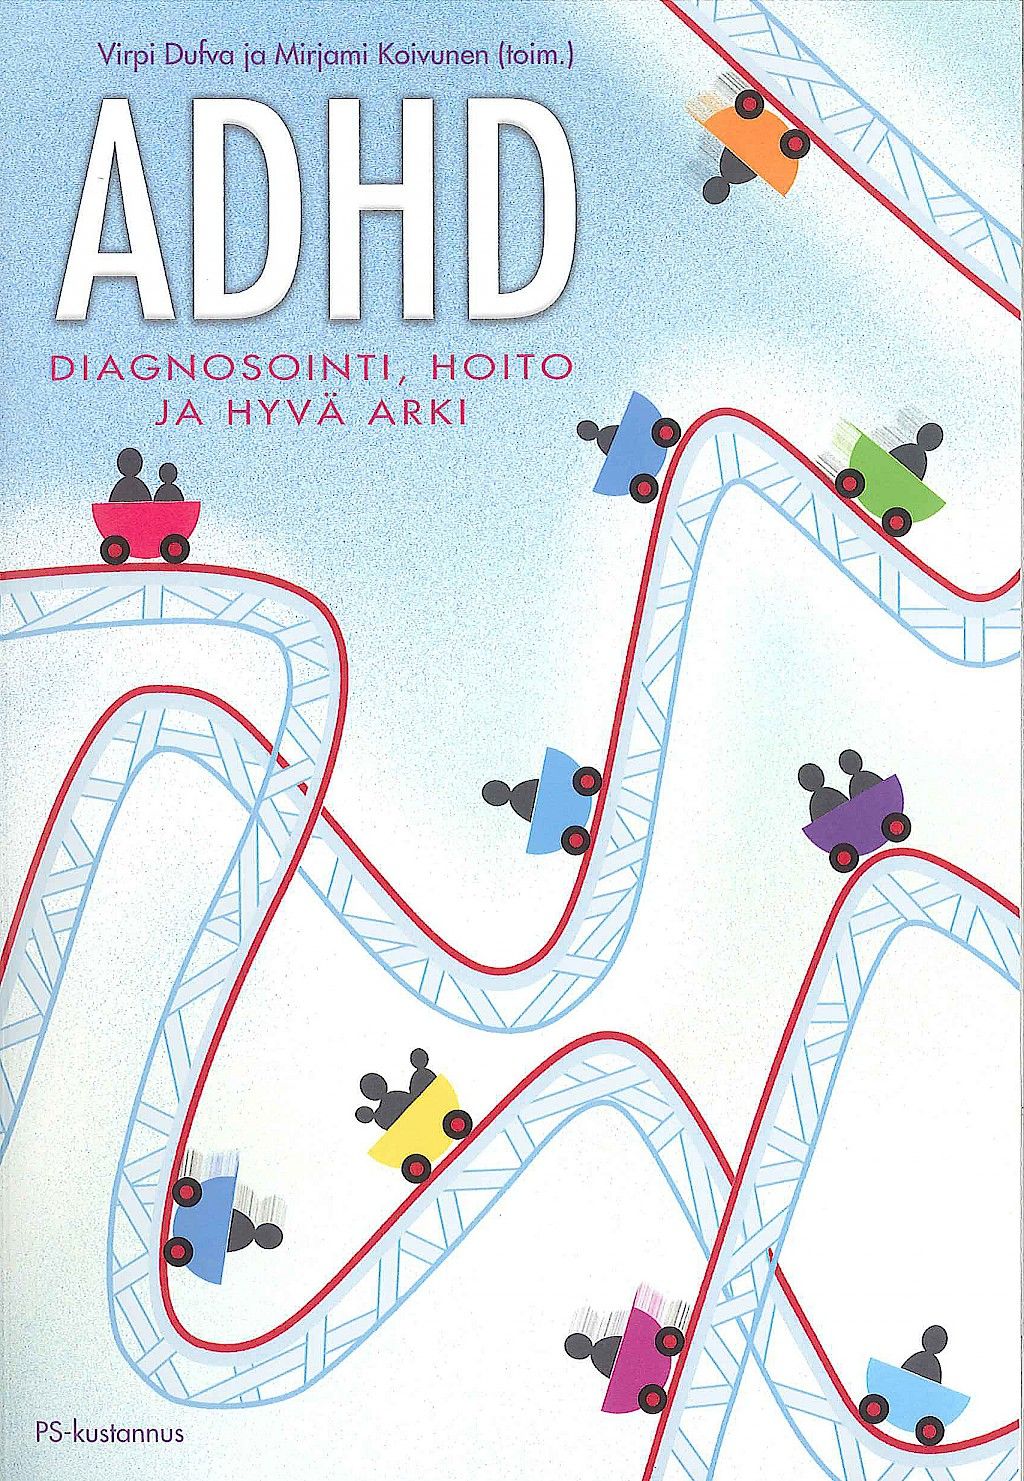 Ajankohtaista asiaa ADHD:sta